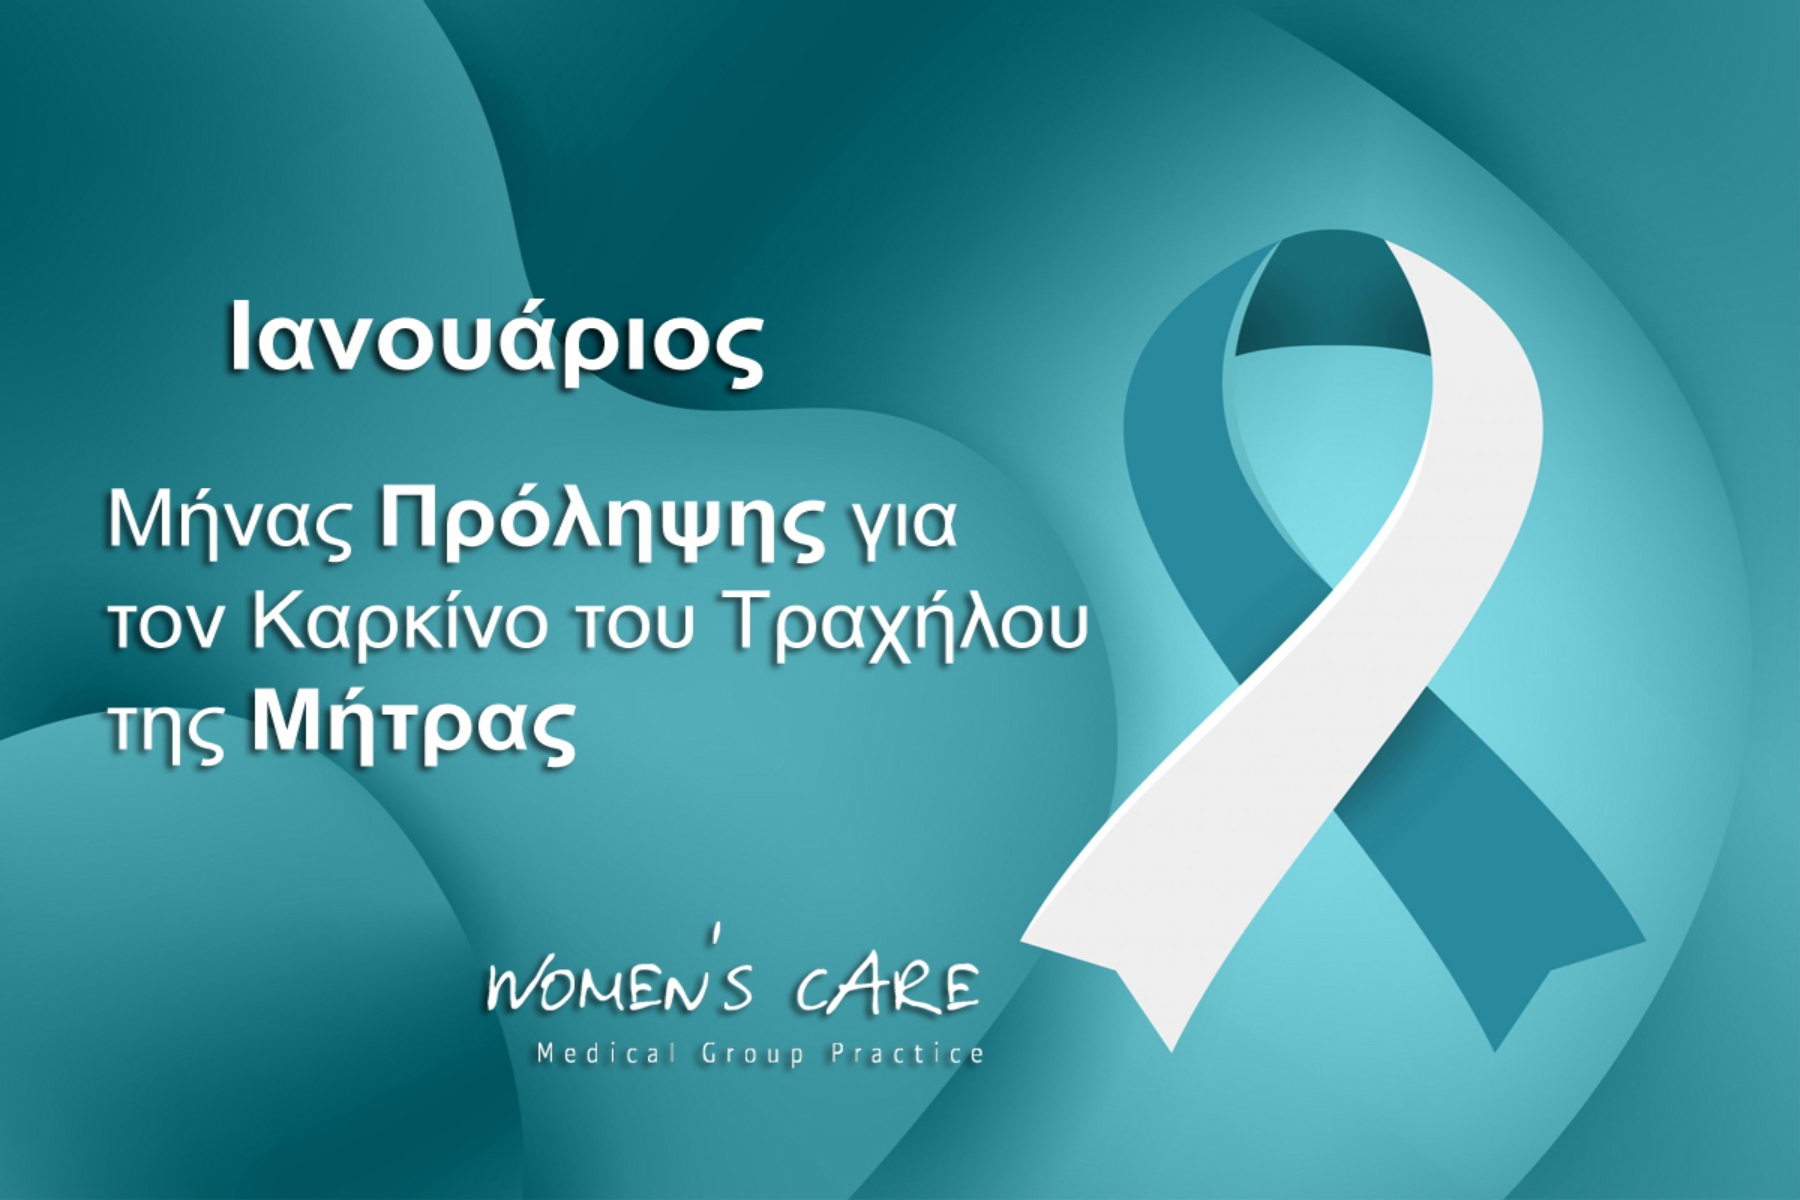 Τράχηλος μήτρα: Μήνας ευαισθητοποίησης για τον καρκίνο του τραχήλου της μήτρας